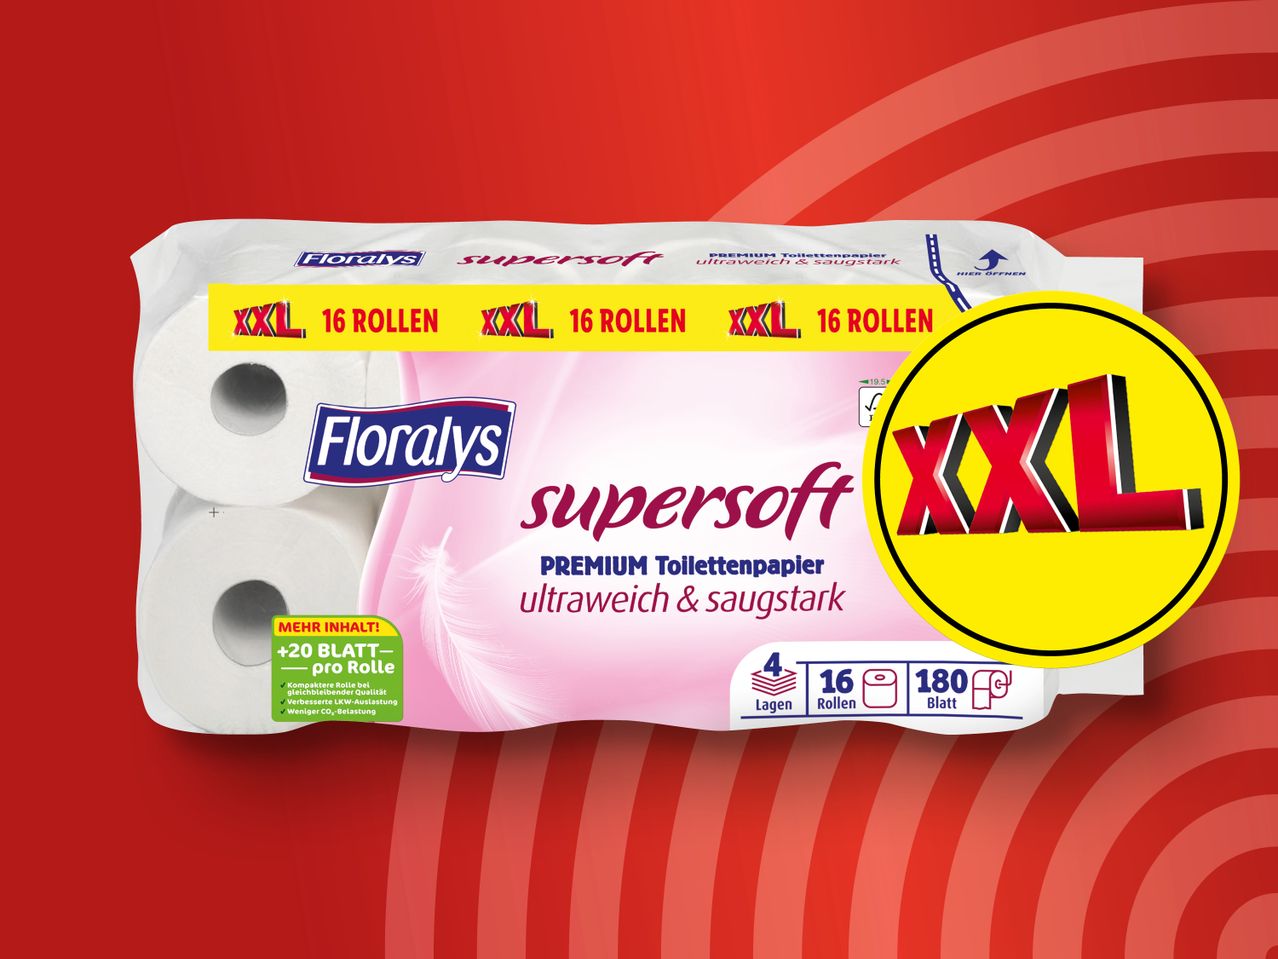 majestätisch Premium Toilettenpapier XXL Supersoft Floralys